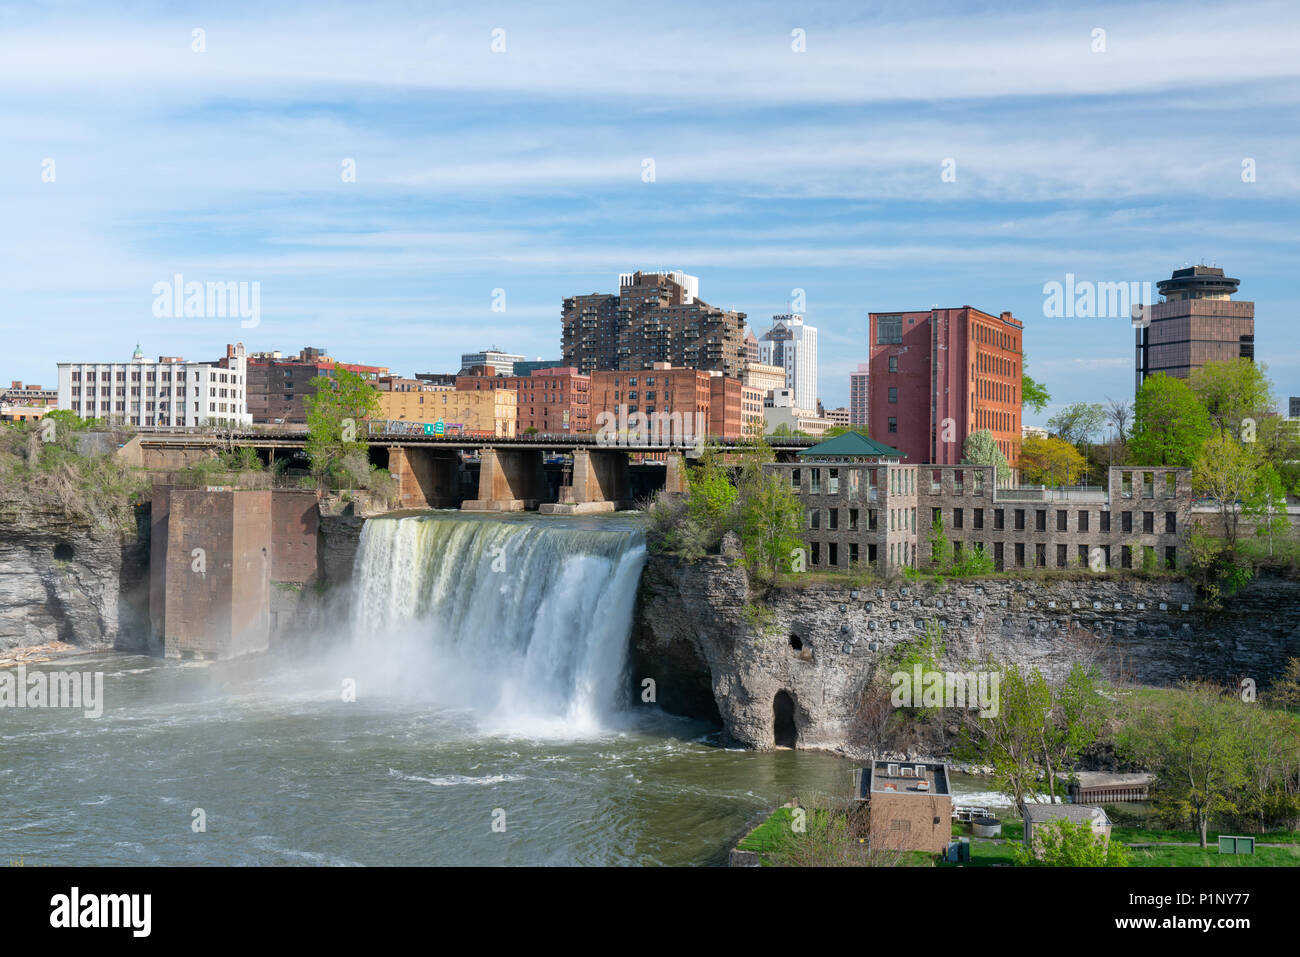 ROCHESTER, NY - 14 Maggio 2018: Skyline di Rochester, New York presso la Alte cascate lungo il fiume Genesee Foto Stock